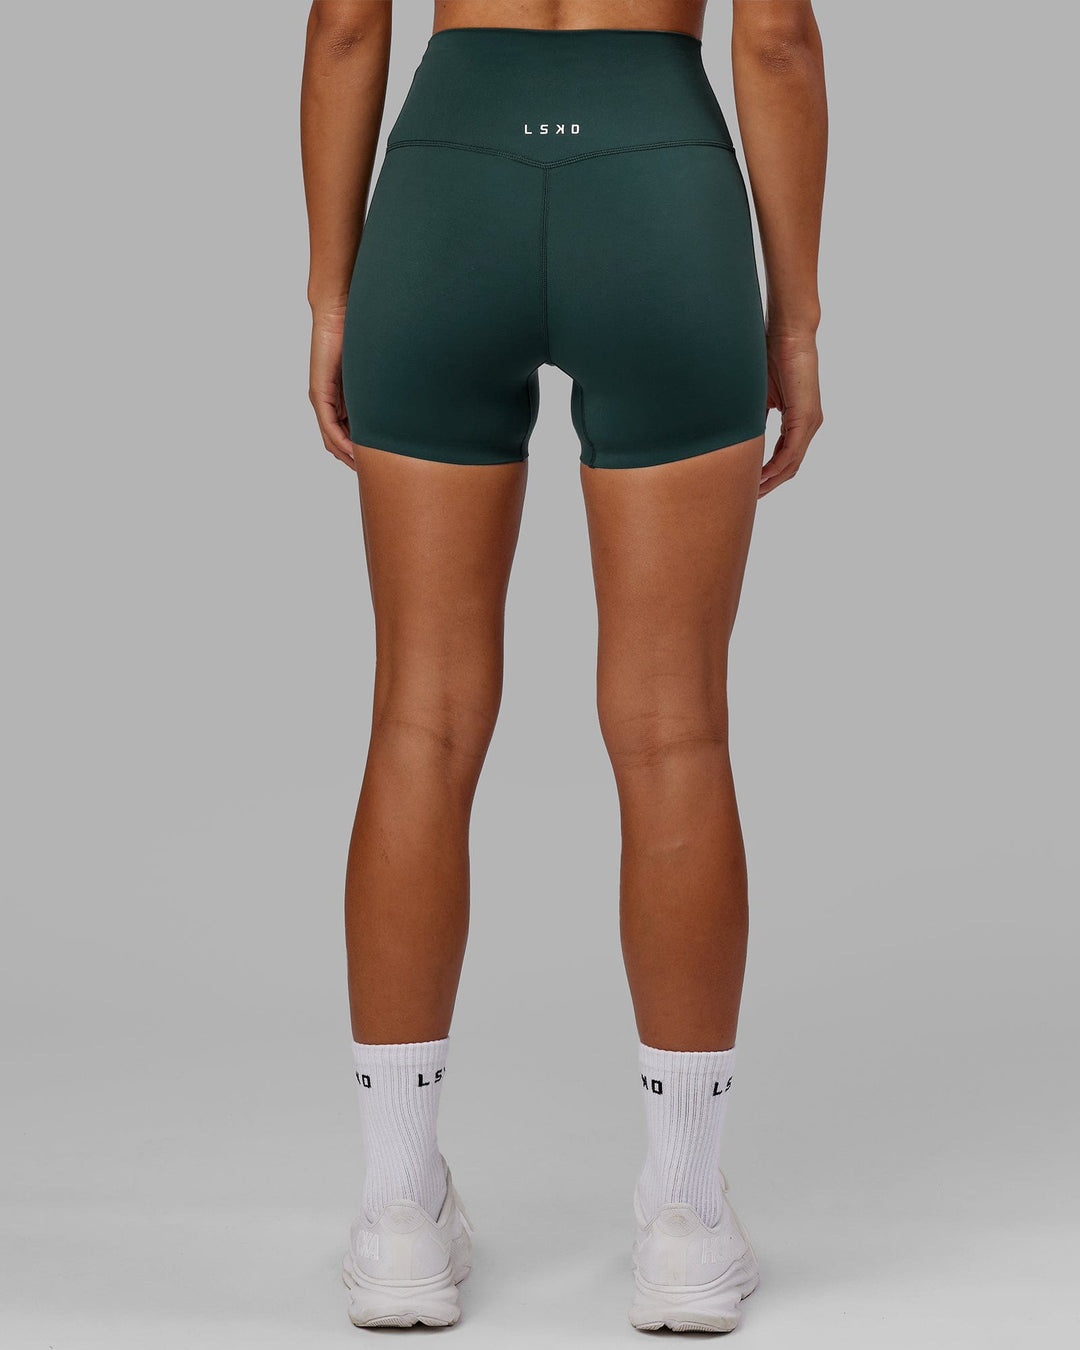 Elixir X-Length Shorts - Vital Green